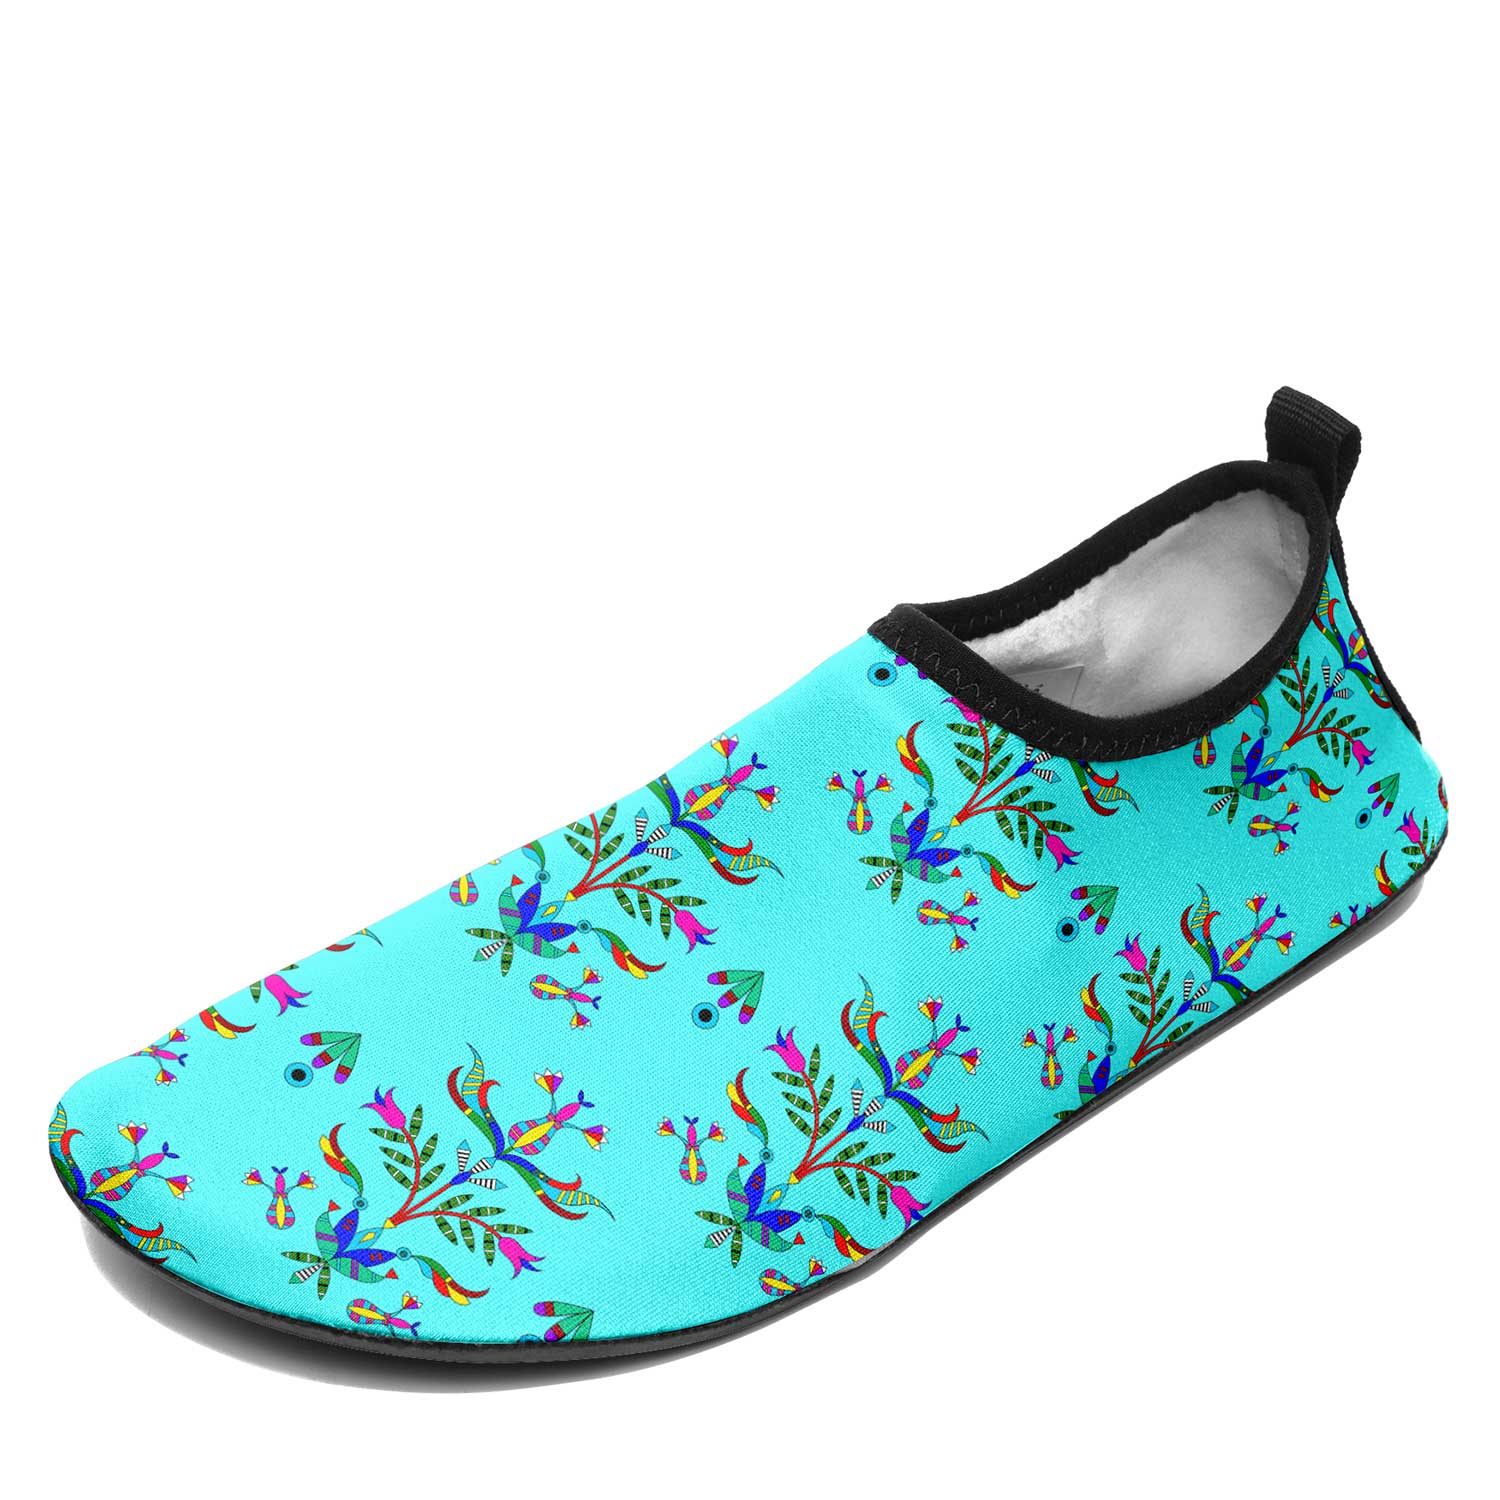 Dakota Damask Turquoise Kid's Sockamoccs Slip On Shoes